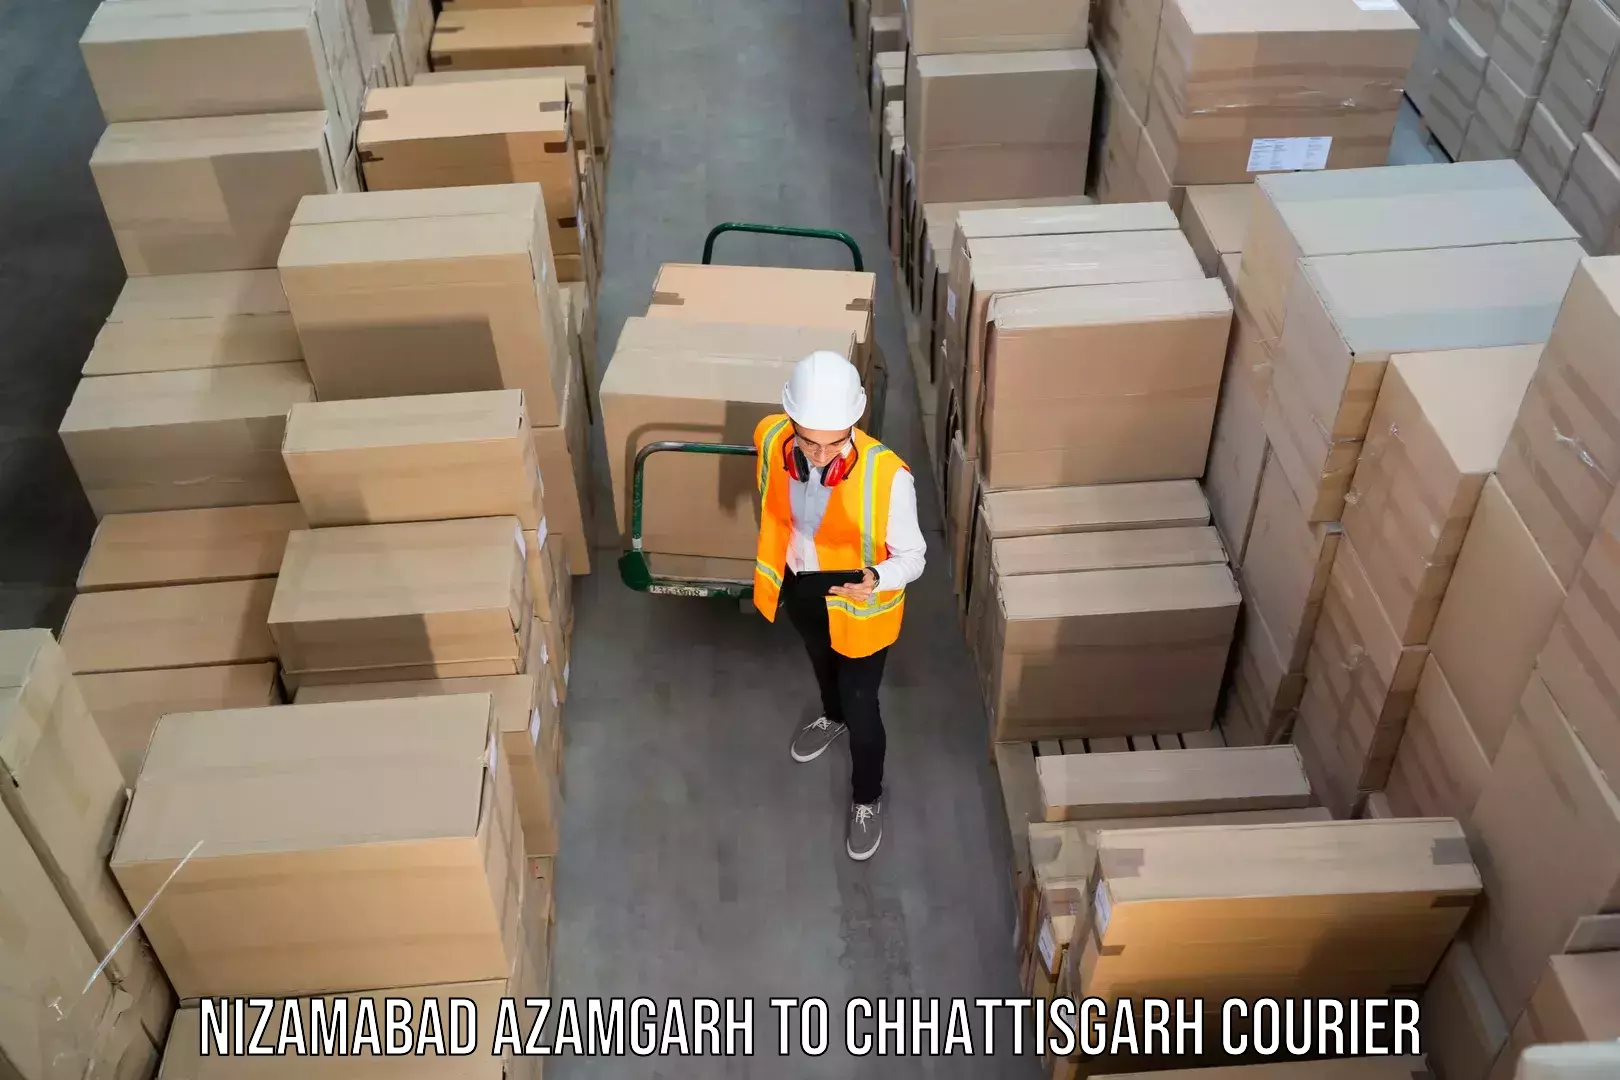 Professional courier handling Nizamabad Azamgarh to Ambikapur